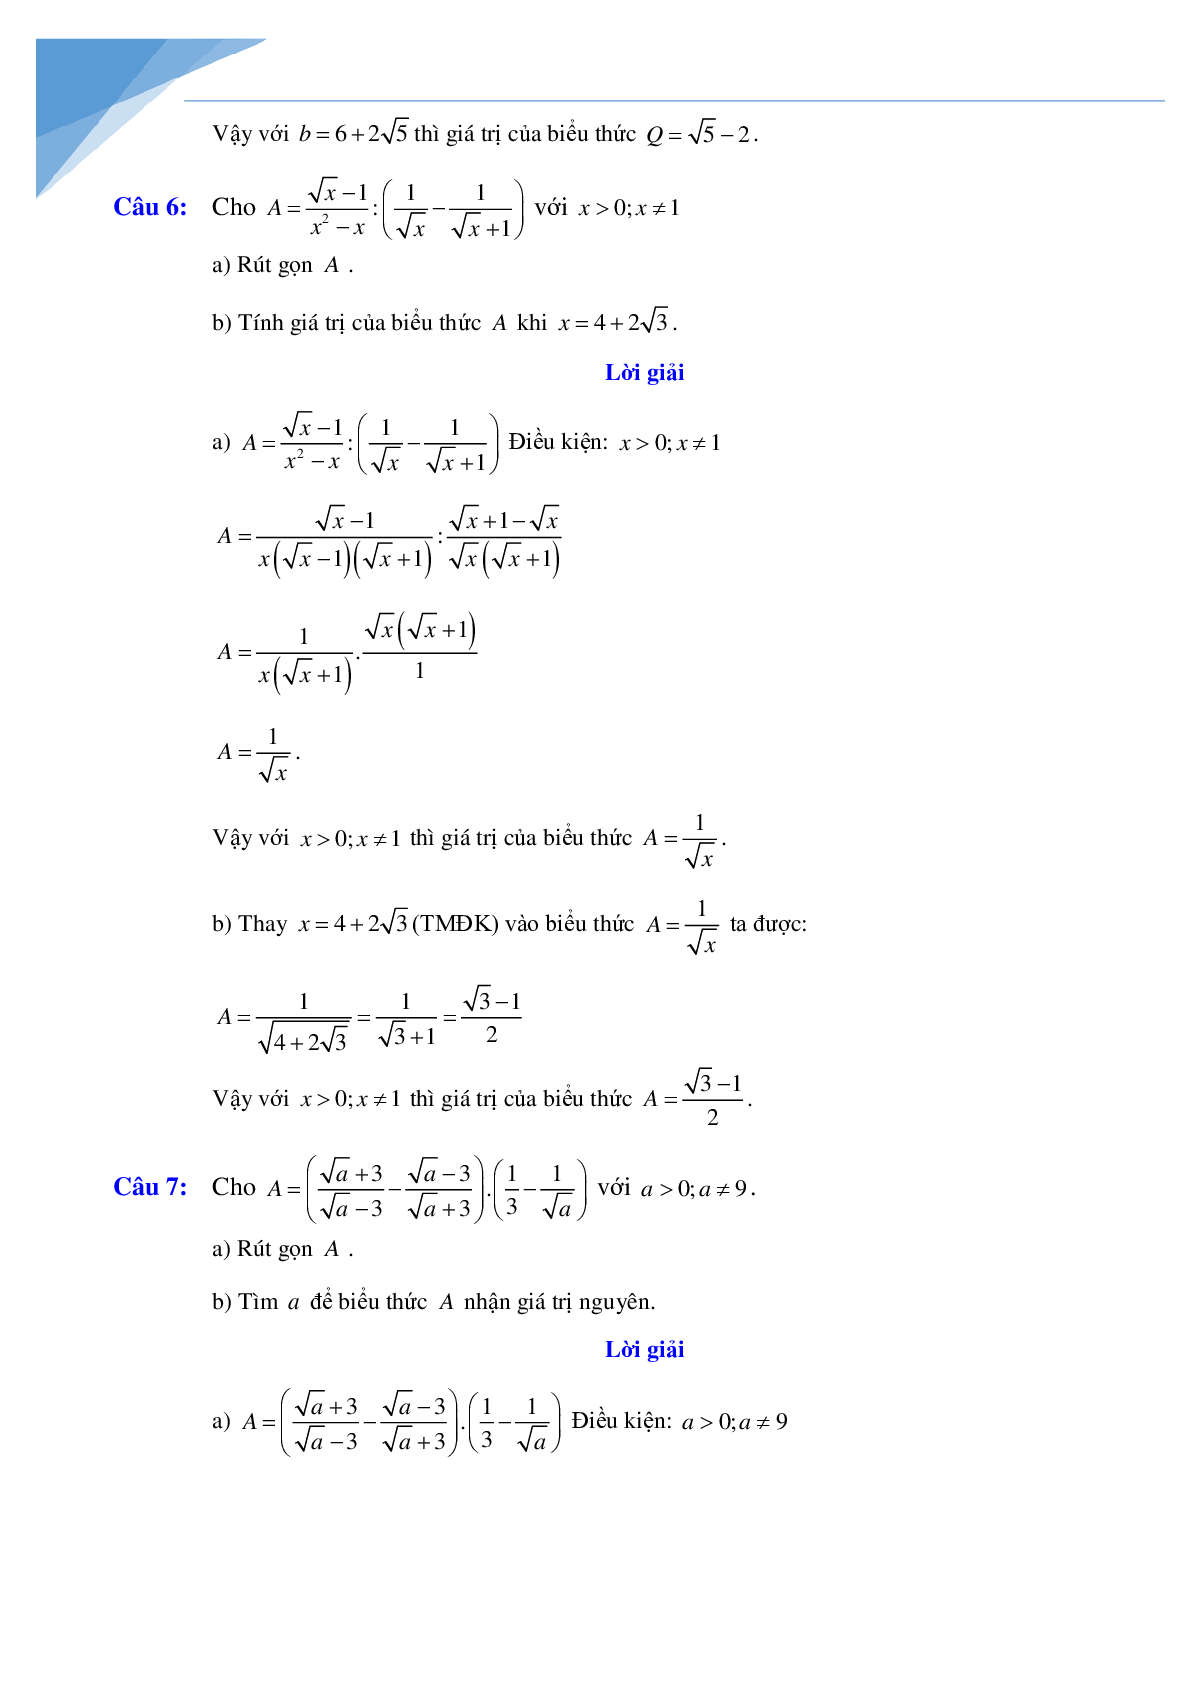 Rút gọn biểu thức và bài toán liên quan (trang 8)